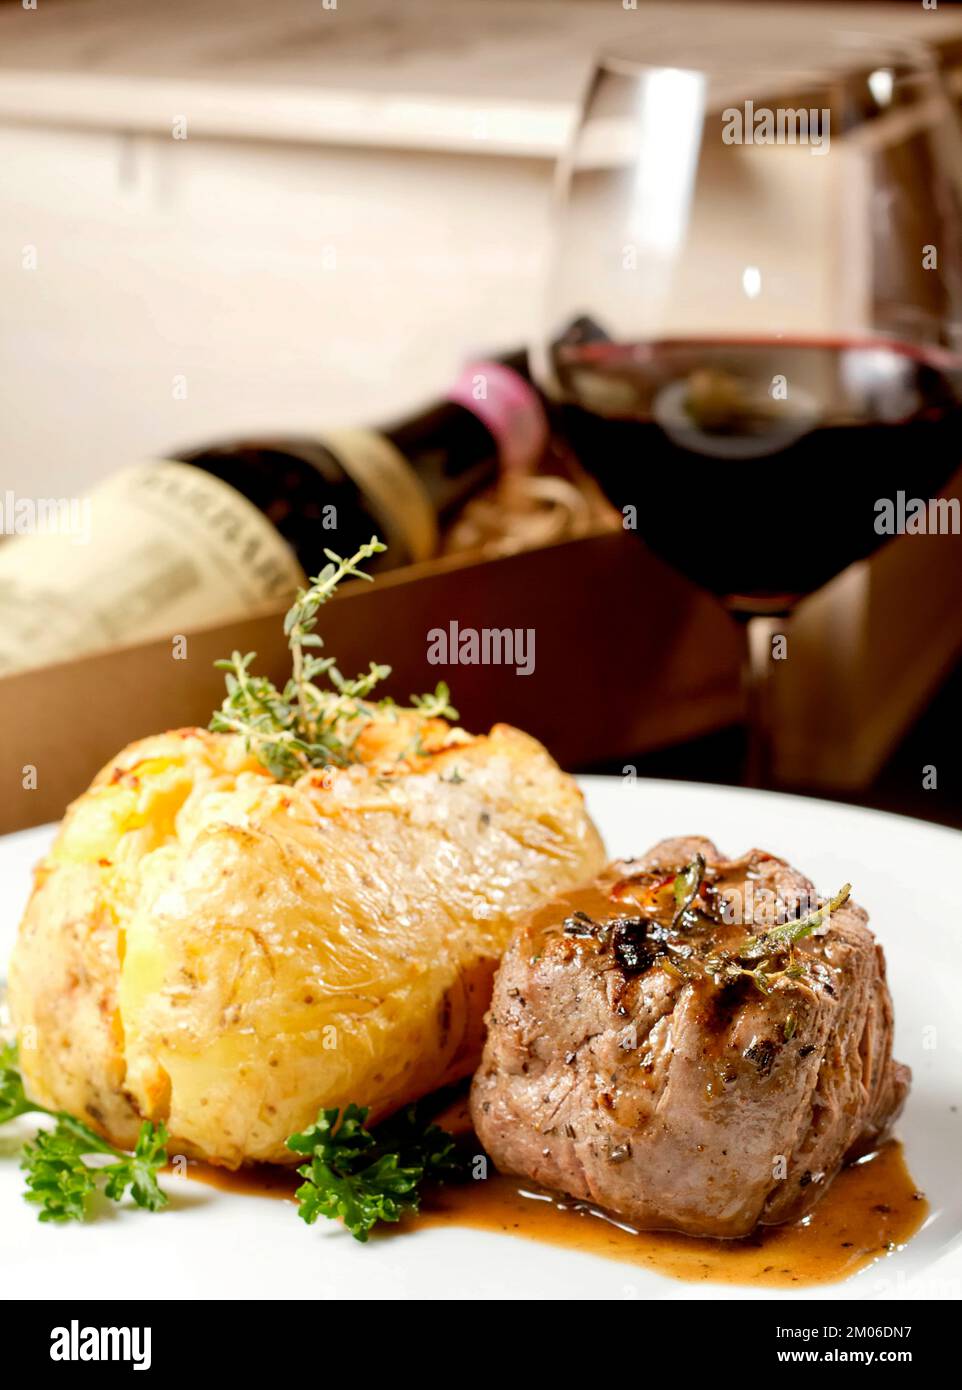 Filet Mignon Rindersteak mit Soße und gefüllter Kartoffel, serviert auf einem Teller, kombiniert mit Rotweinglas und Flasche. Erstklassiges Restaurant Gourmet-Essen Stockfoto